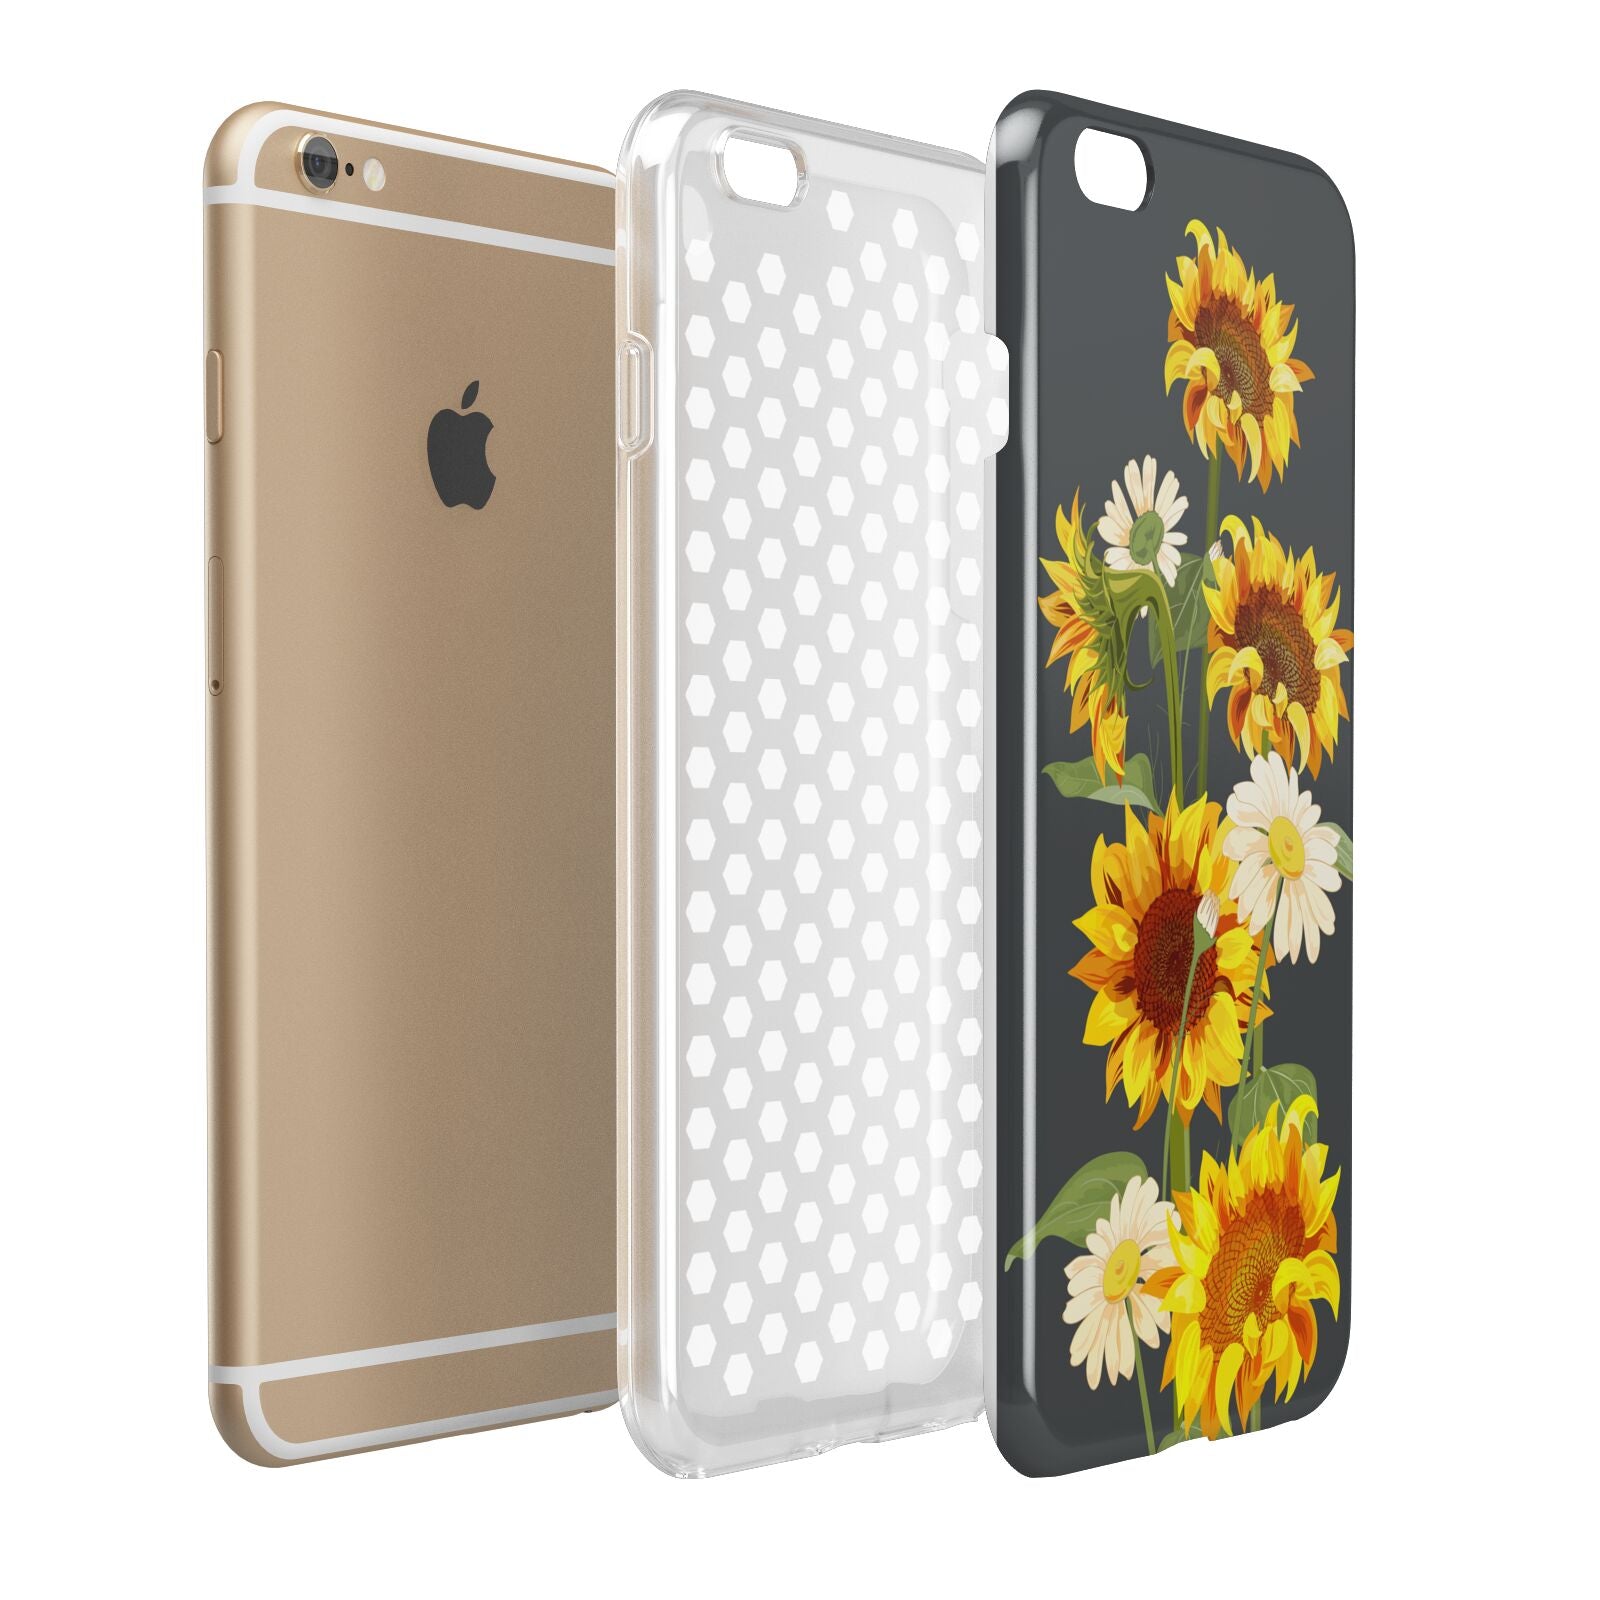 Sunflower Floral Apple iPhone 6 Plus 3D Tough Case Expand Detail Image